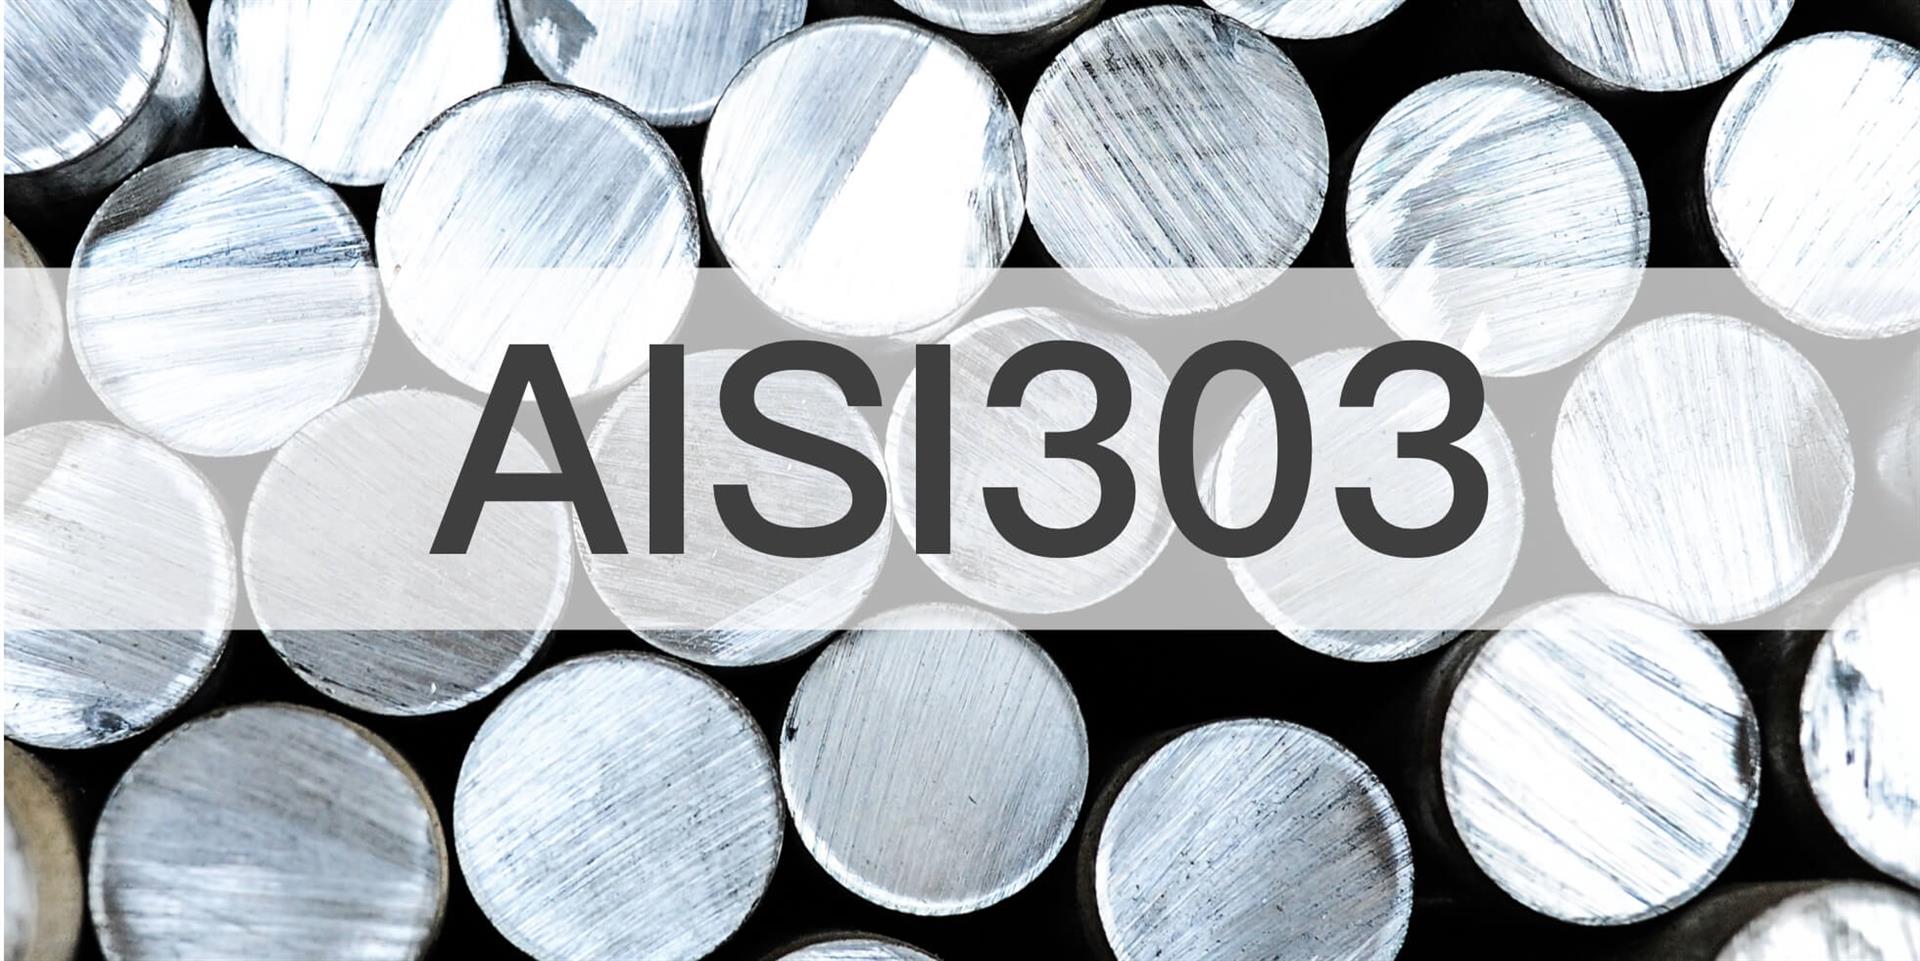 AISI303 材料物性化性資料